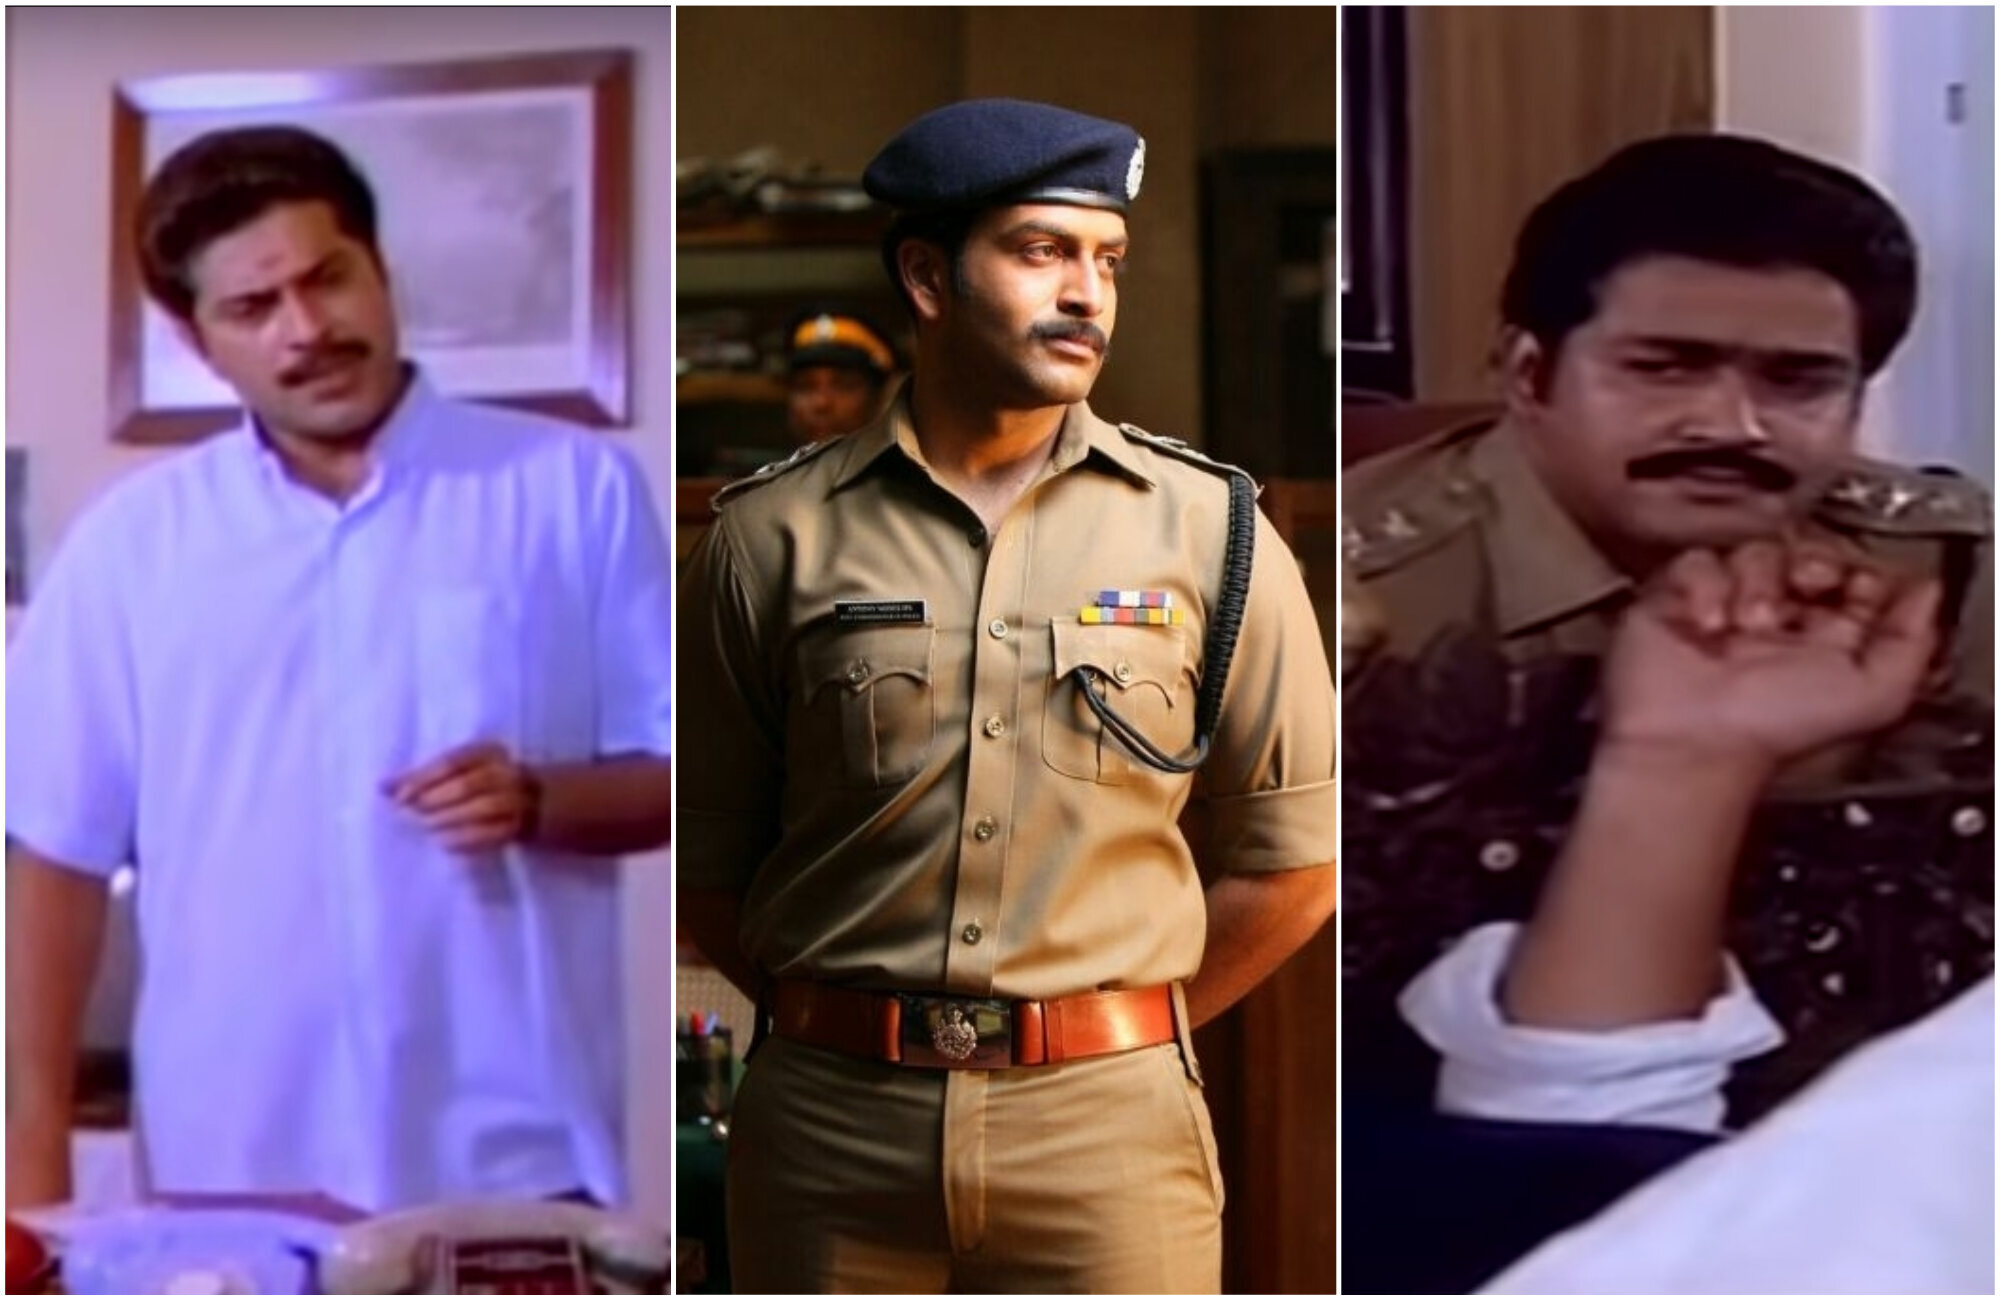 mumbai police malayalam movie watch online